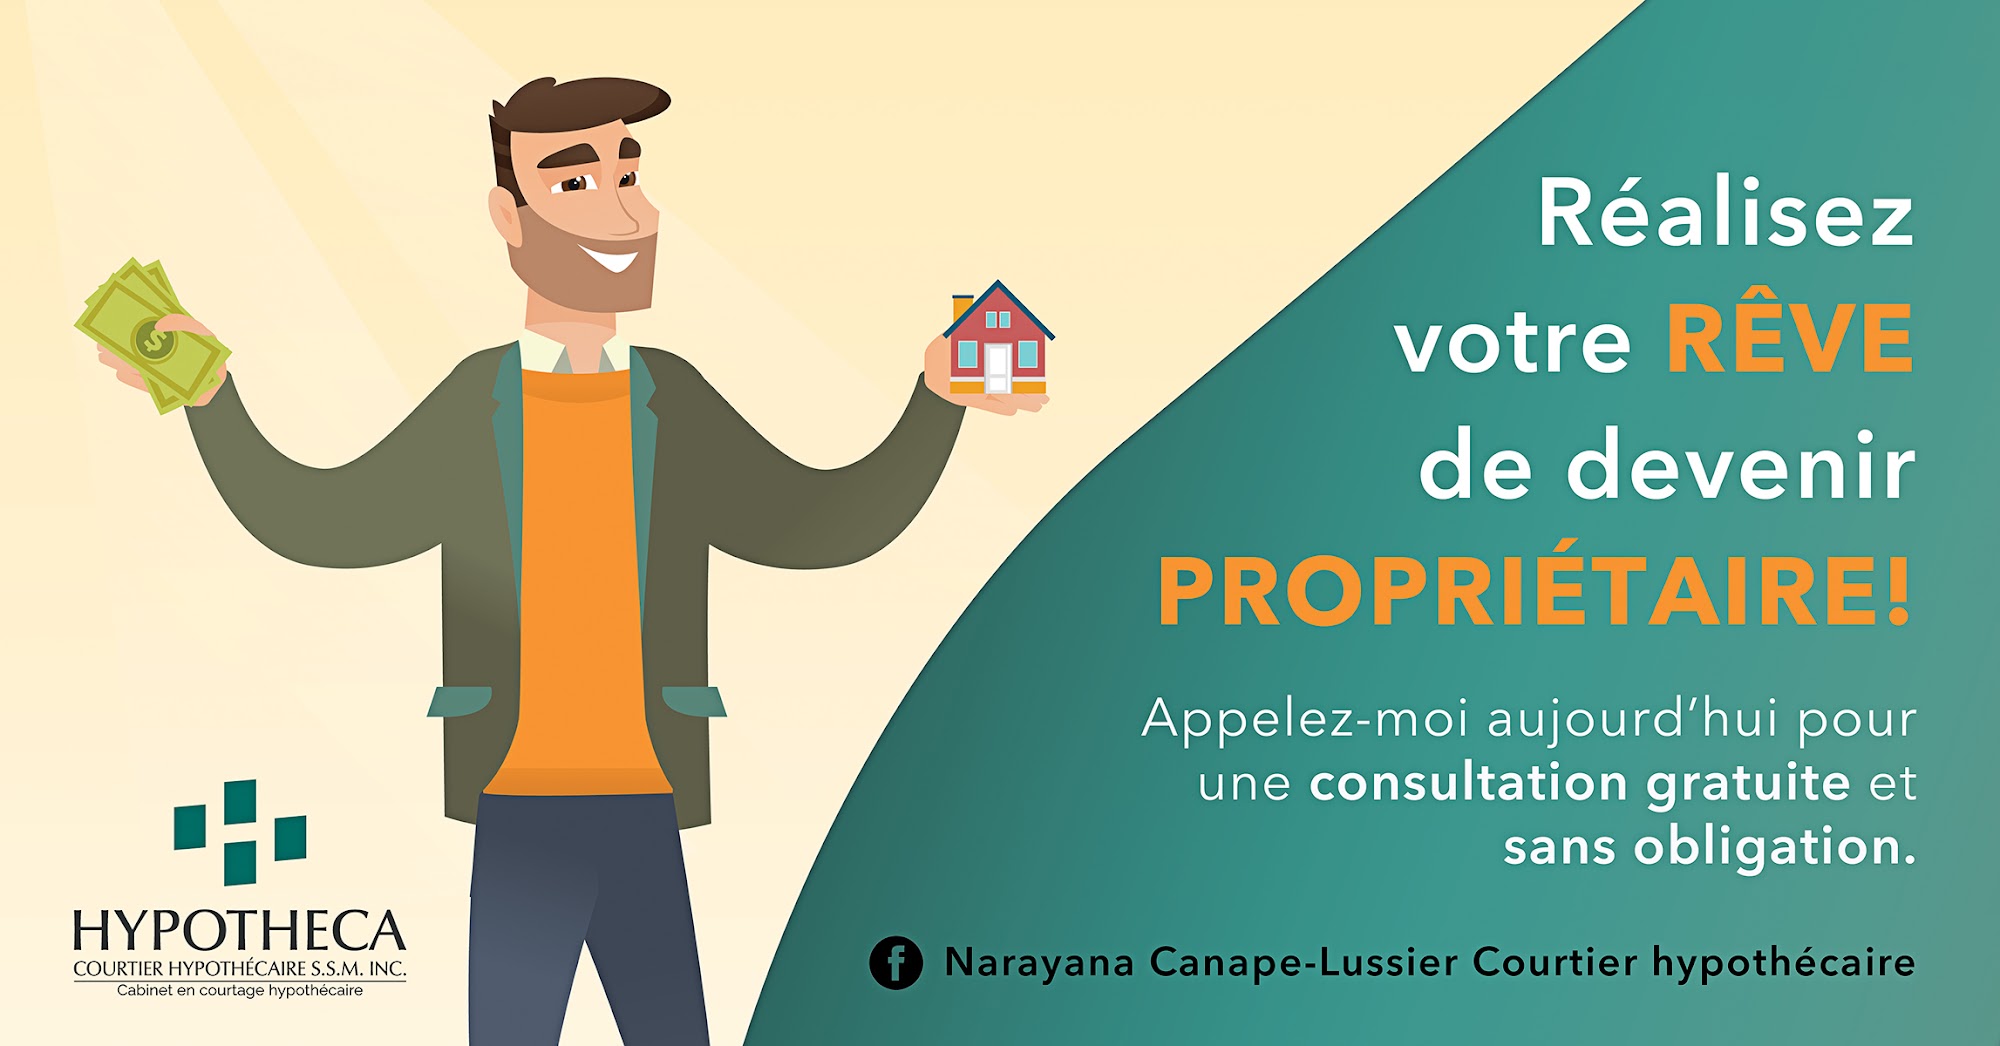 Narayana Canape-Lussier - Courtier hypothécaire Hypotheca 92 24e Av, Sainte-Marthe-sur-le-Lac Quebec J0N 1P0